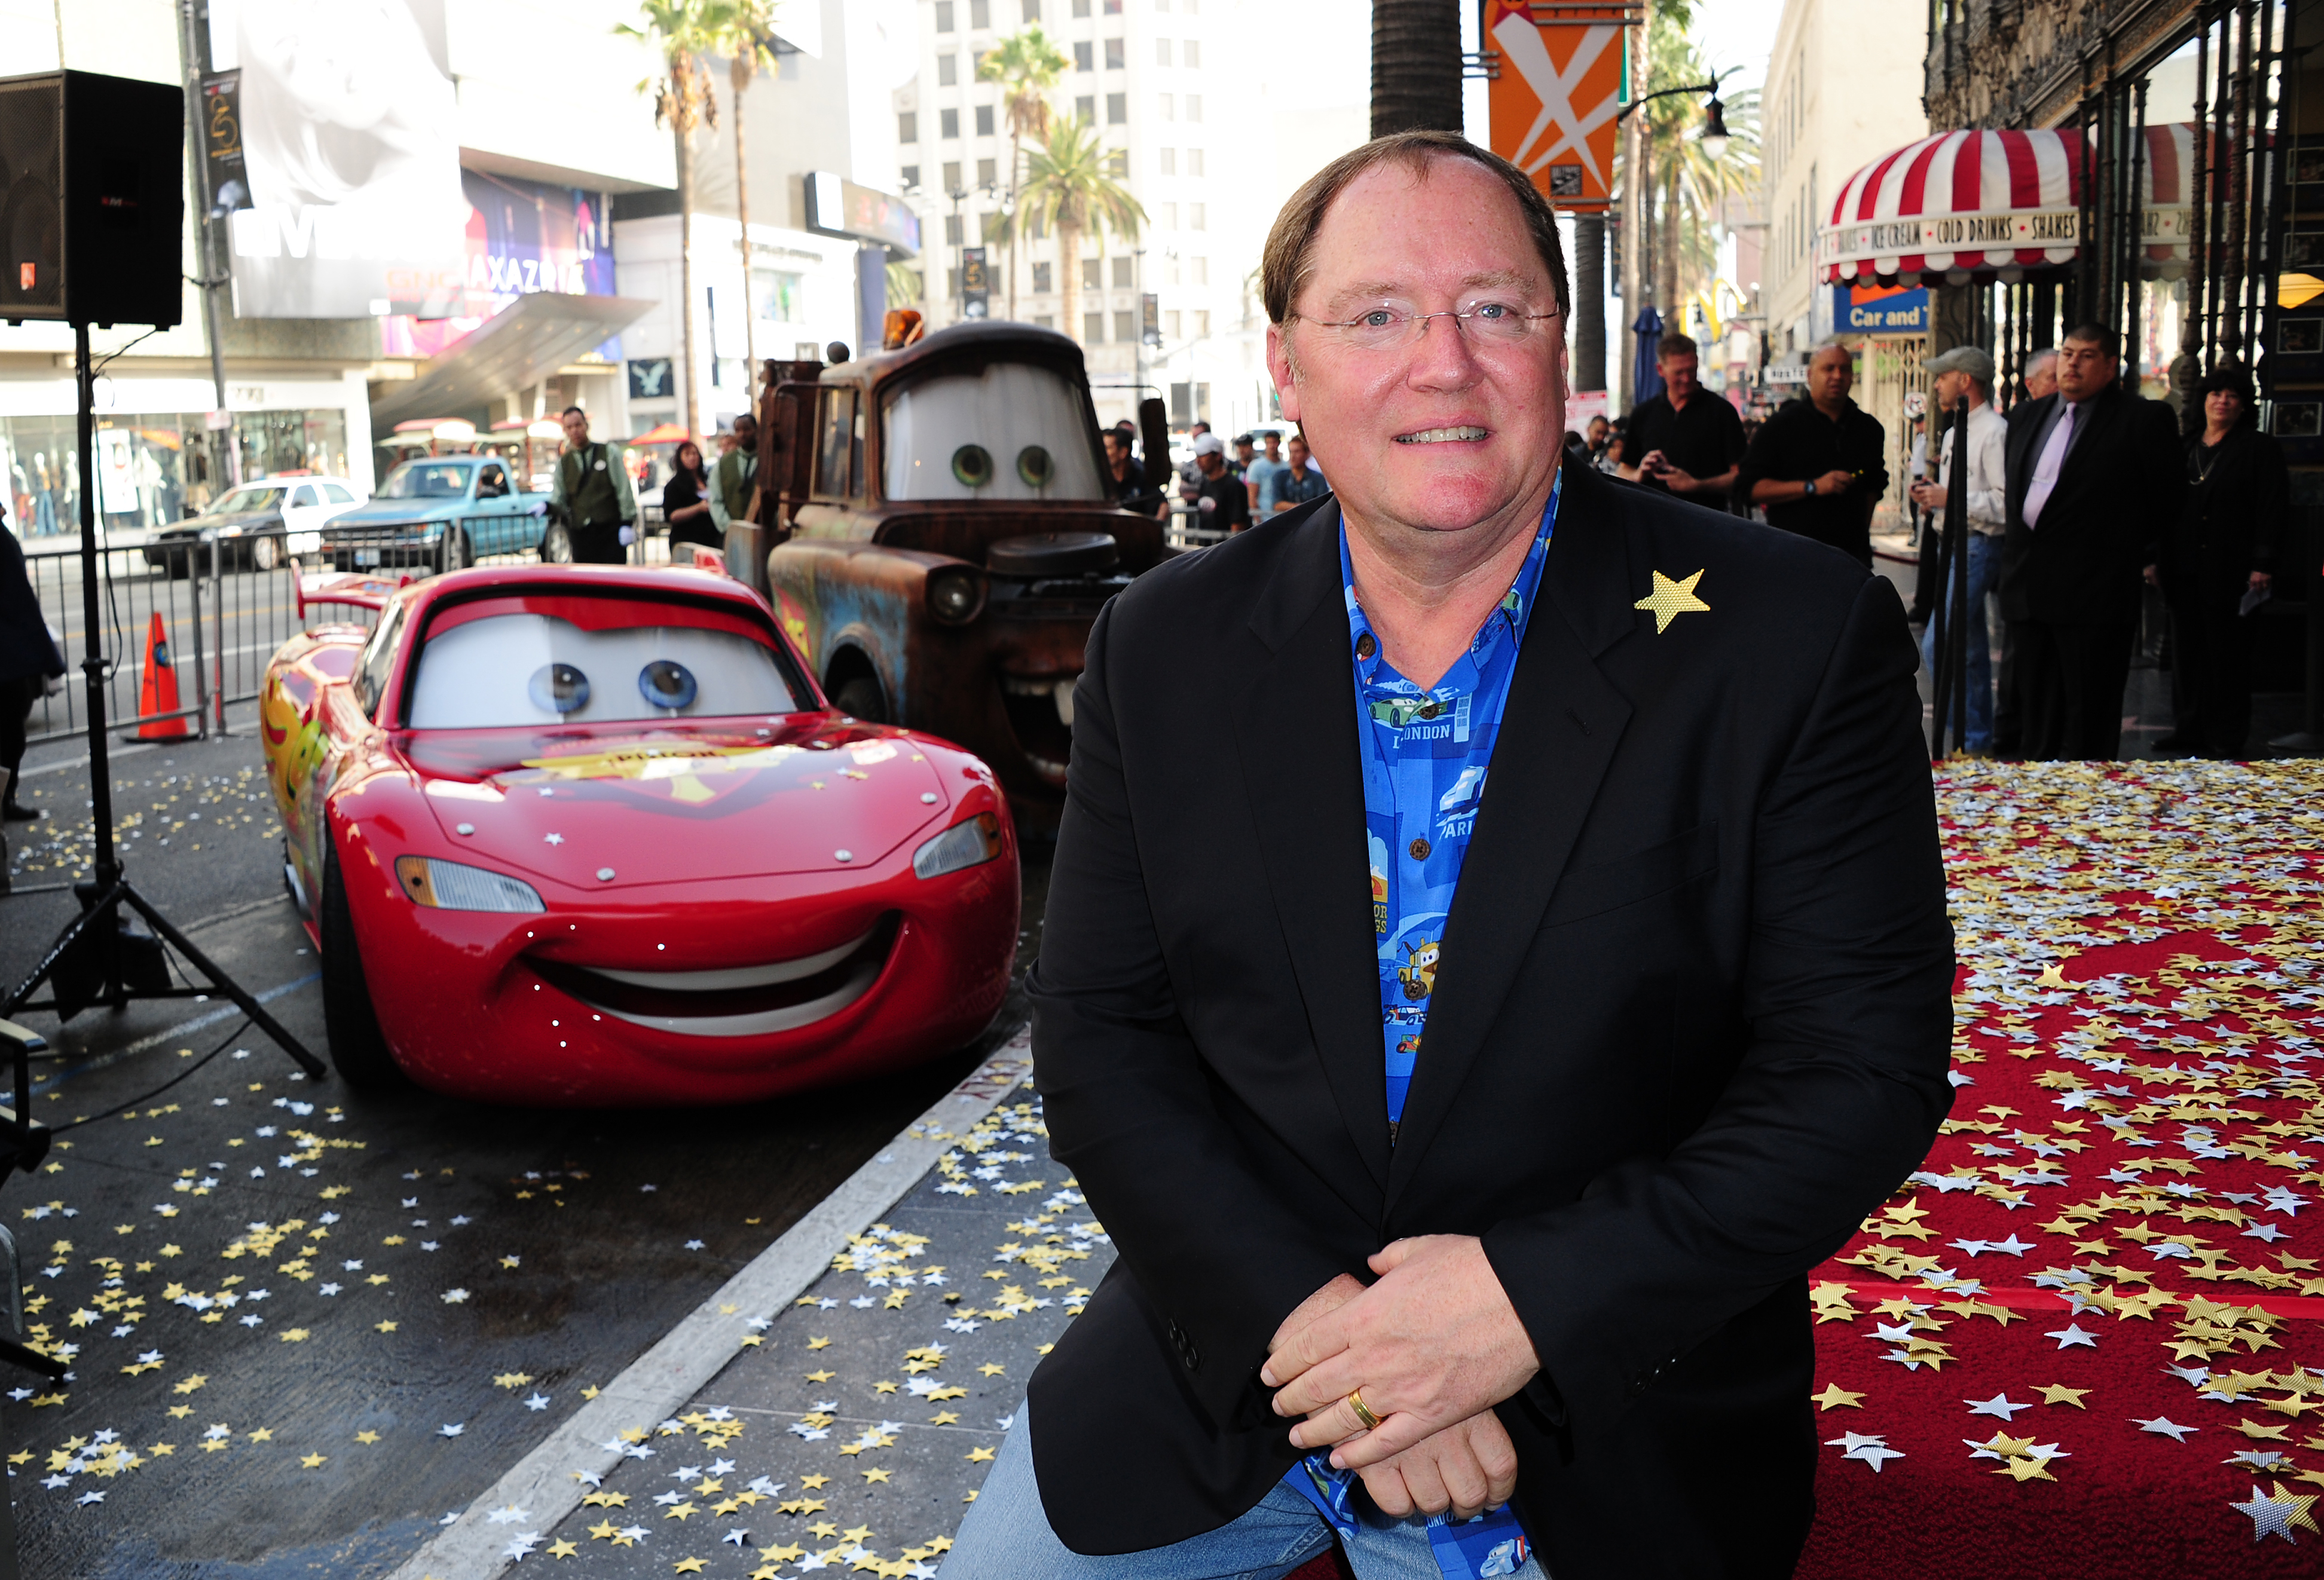 John Lasseternek meg lett bocsátva, hogy nőket zaklatott